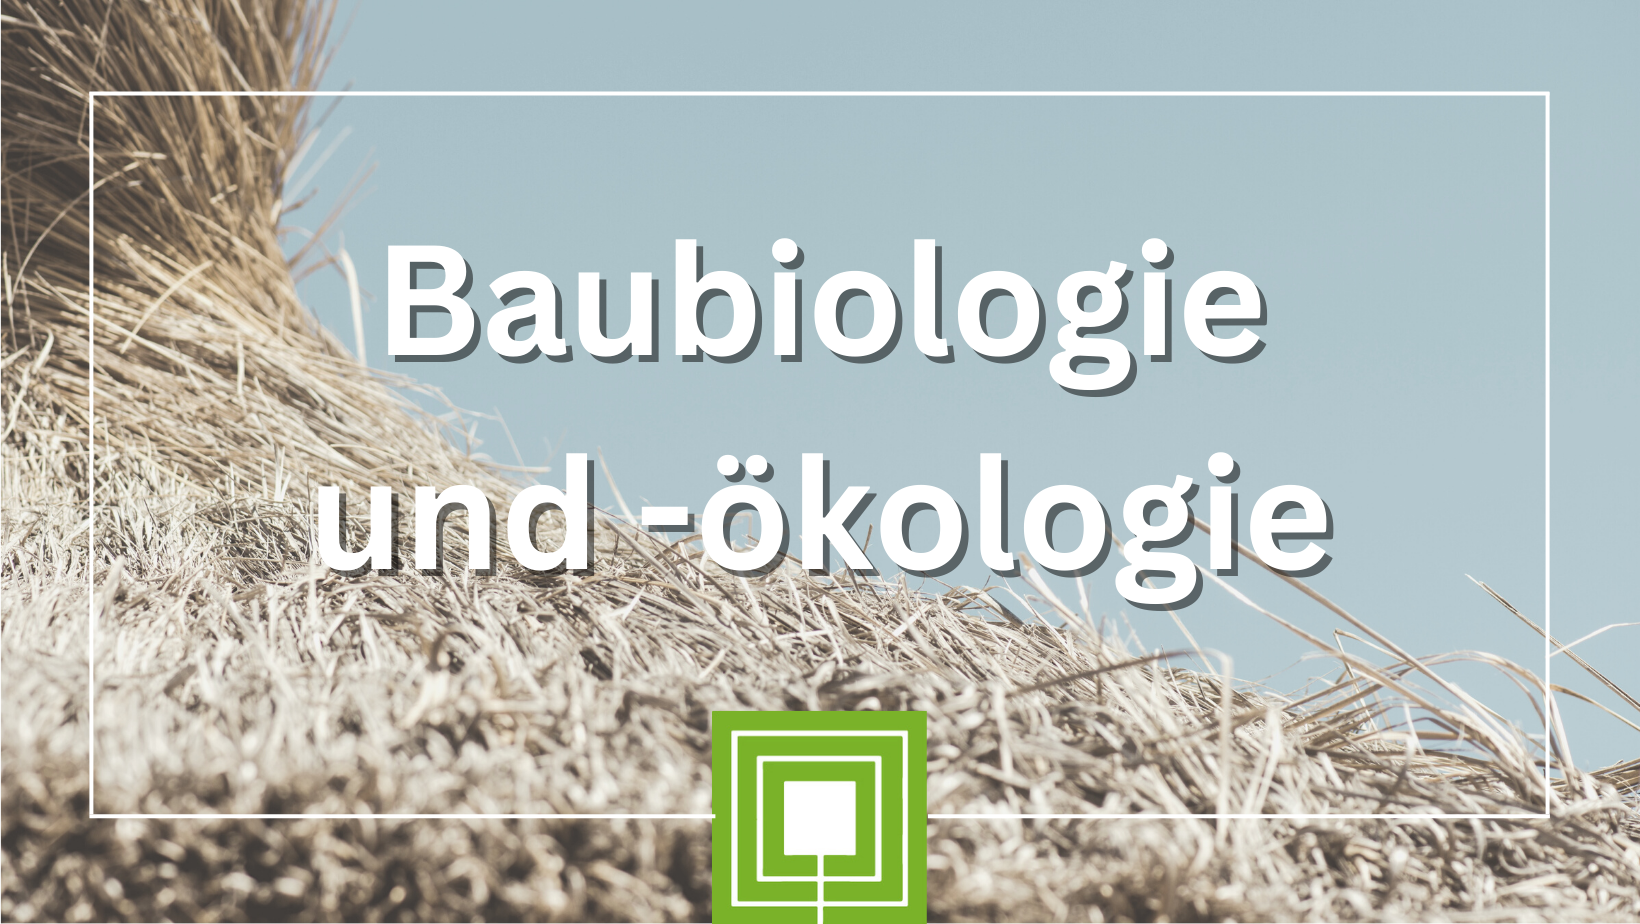 Baubiologie und -ökologie